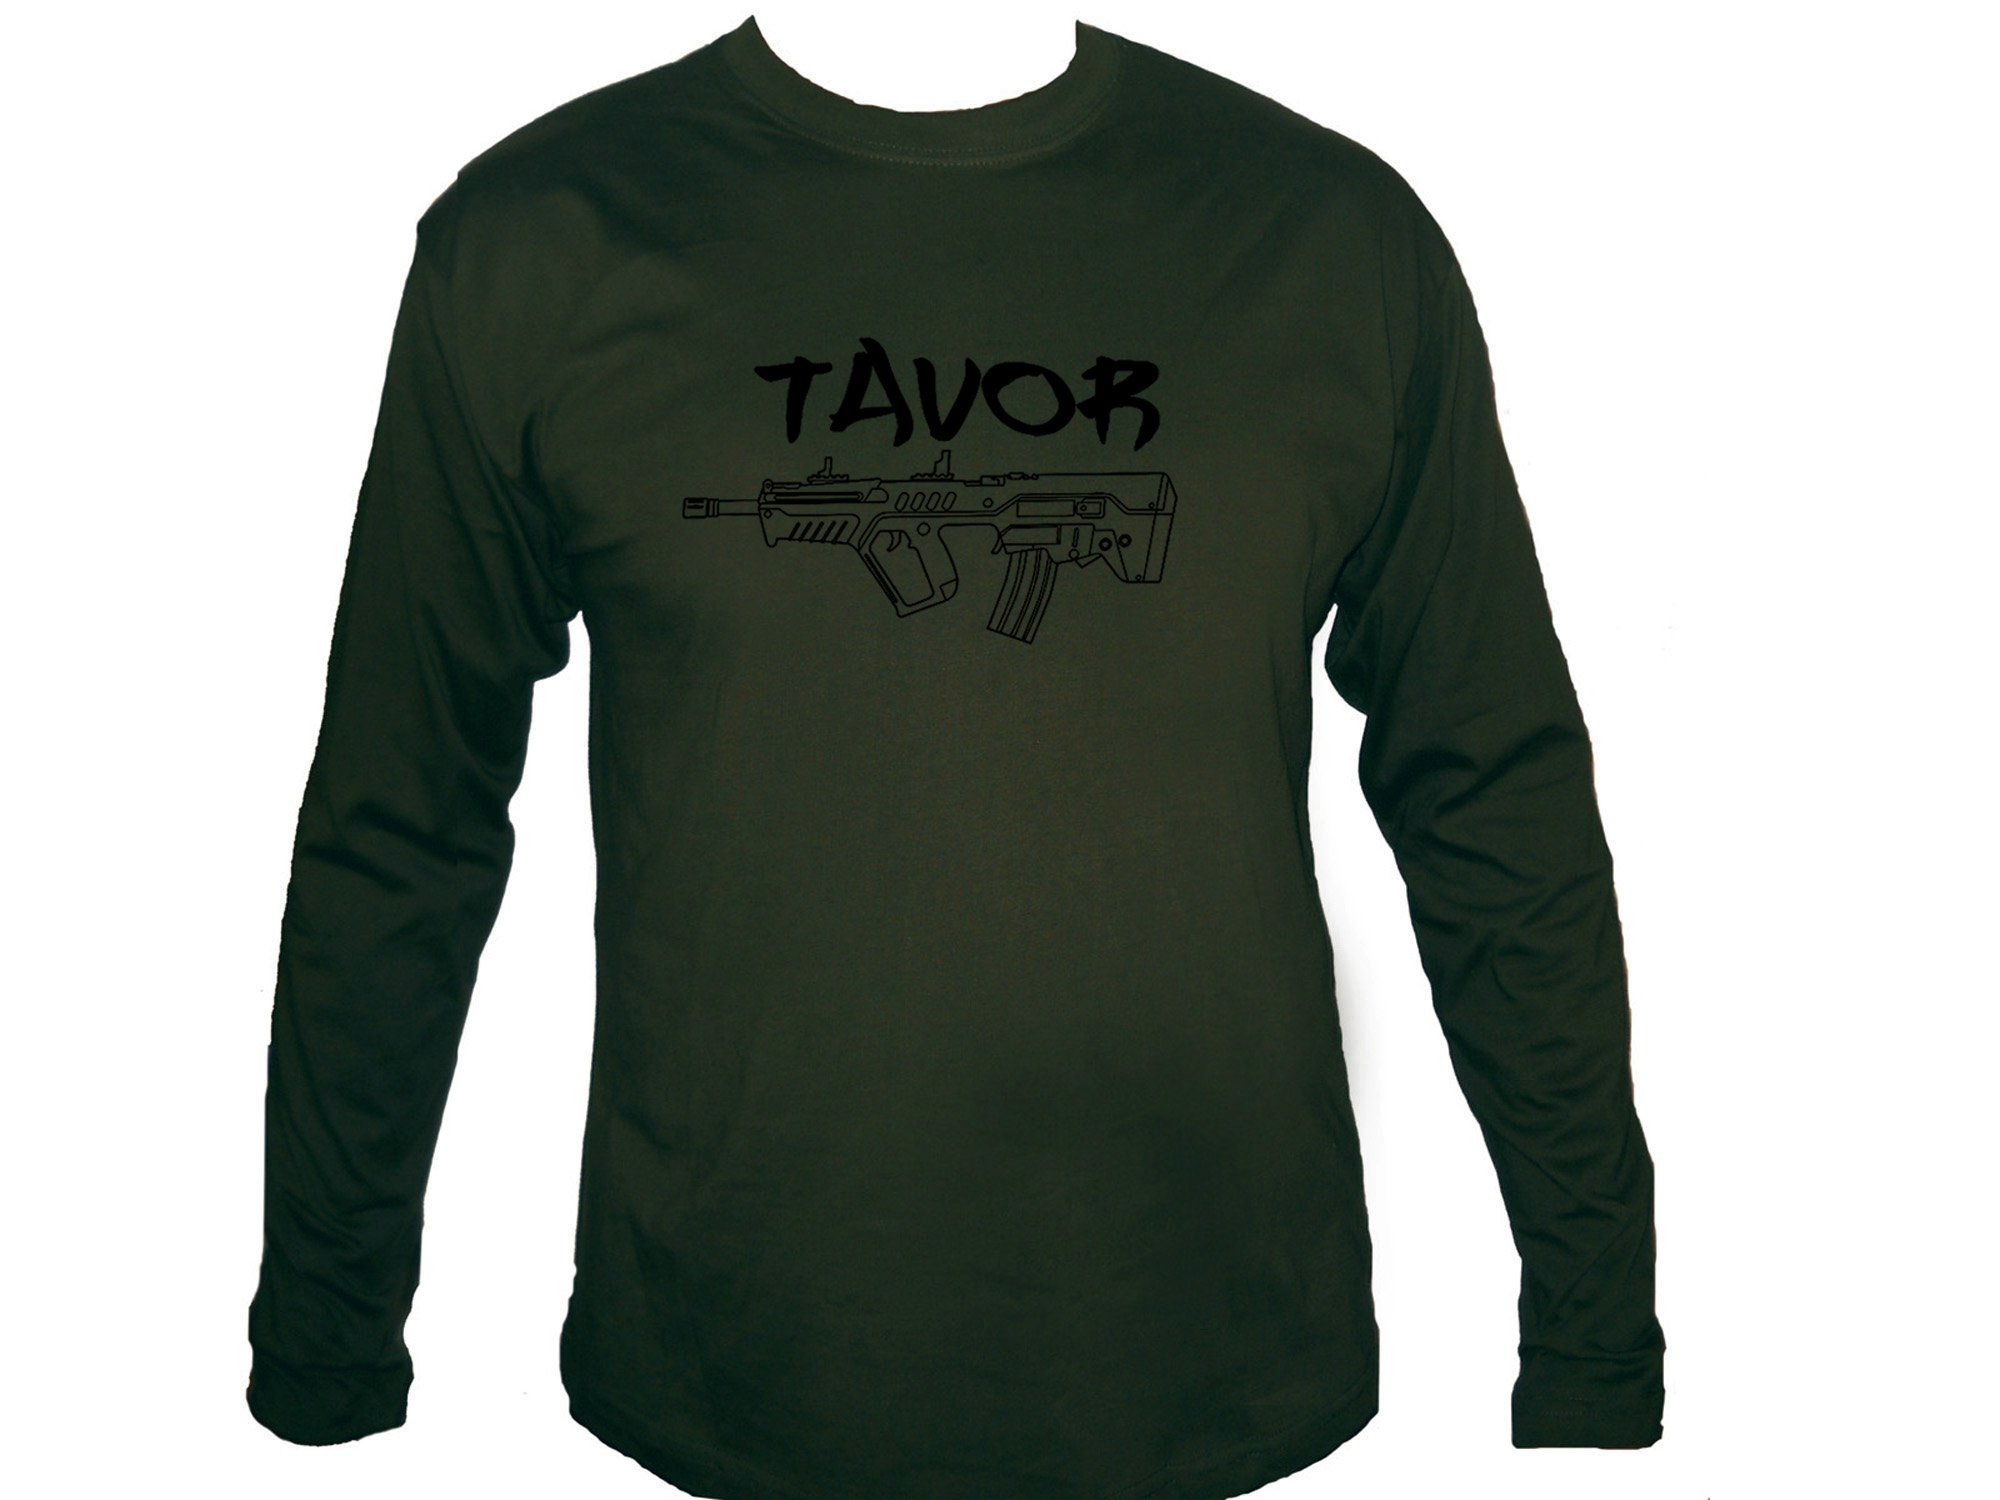 Tavor Machine Gun sleeved olive green 100% cotton t-shirt